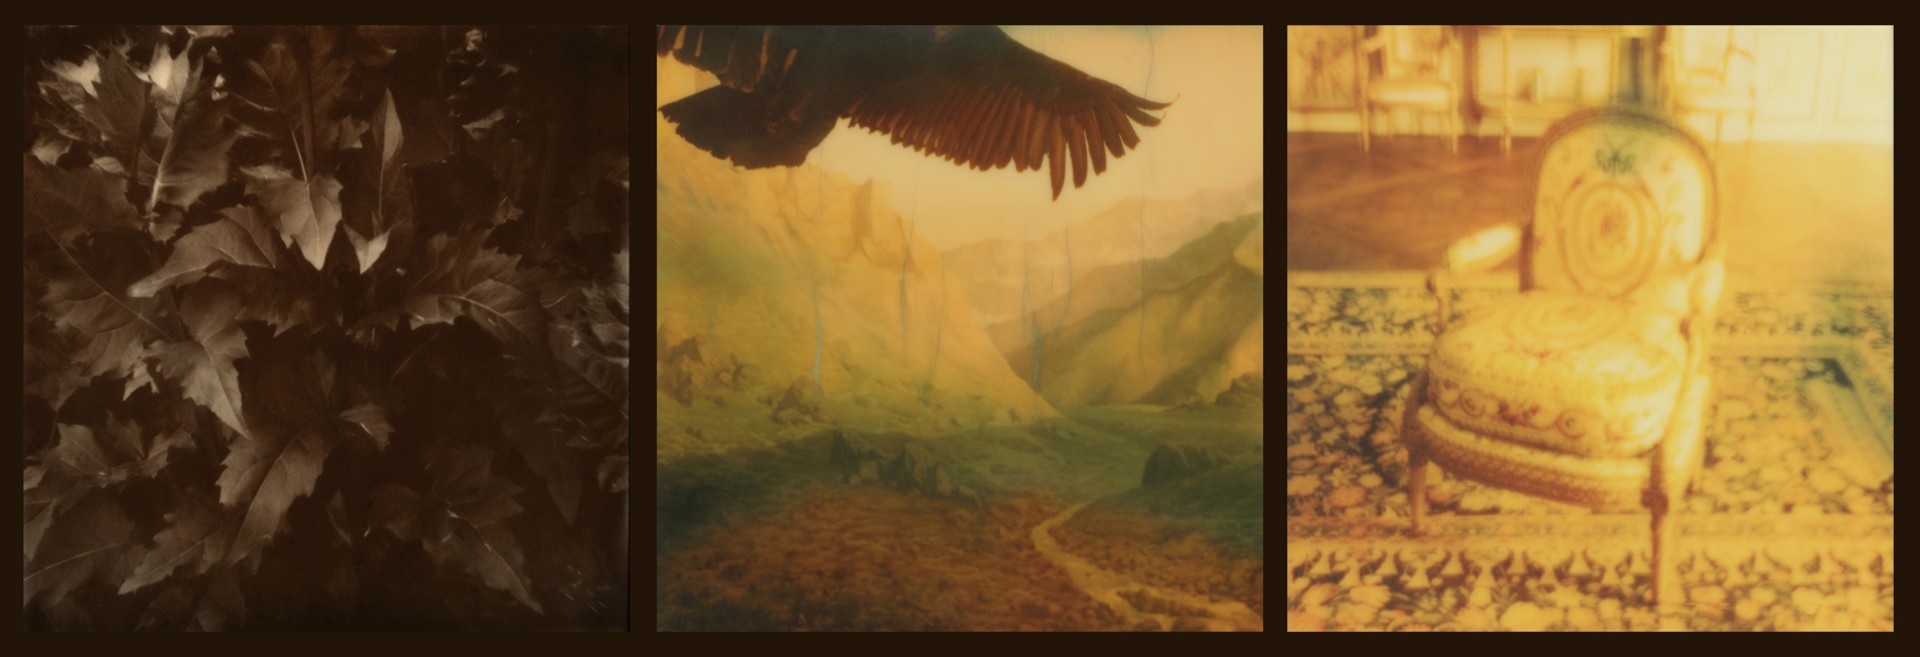 Raptors and Songbirds (Gold) by Lori Van Houten